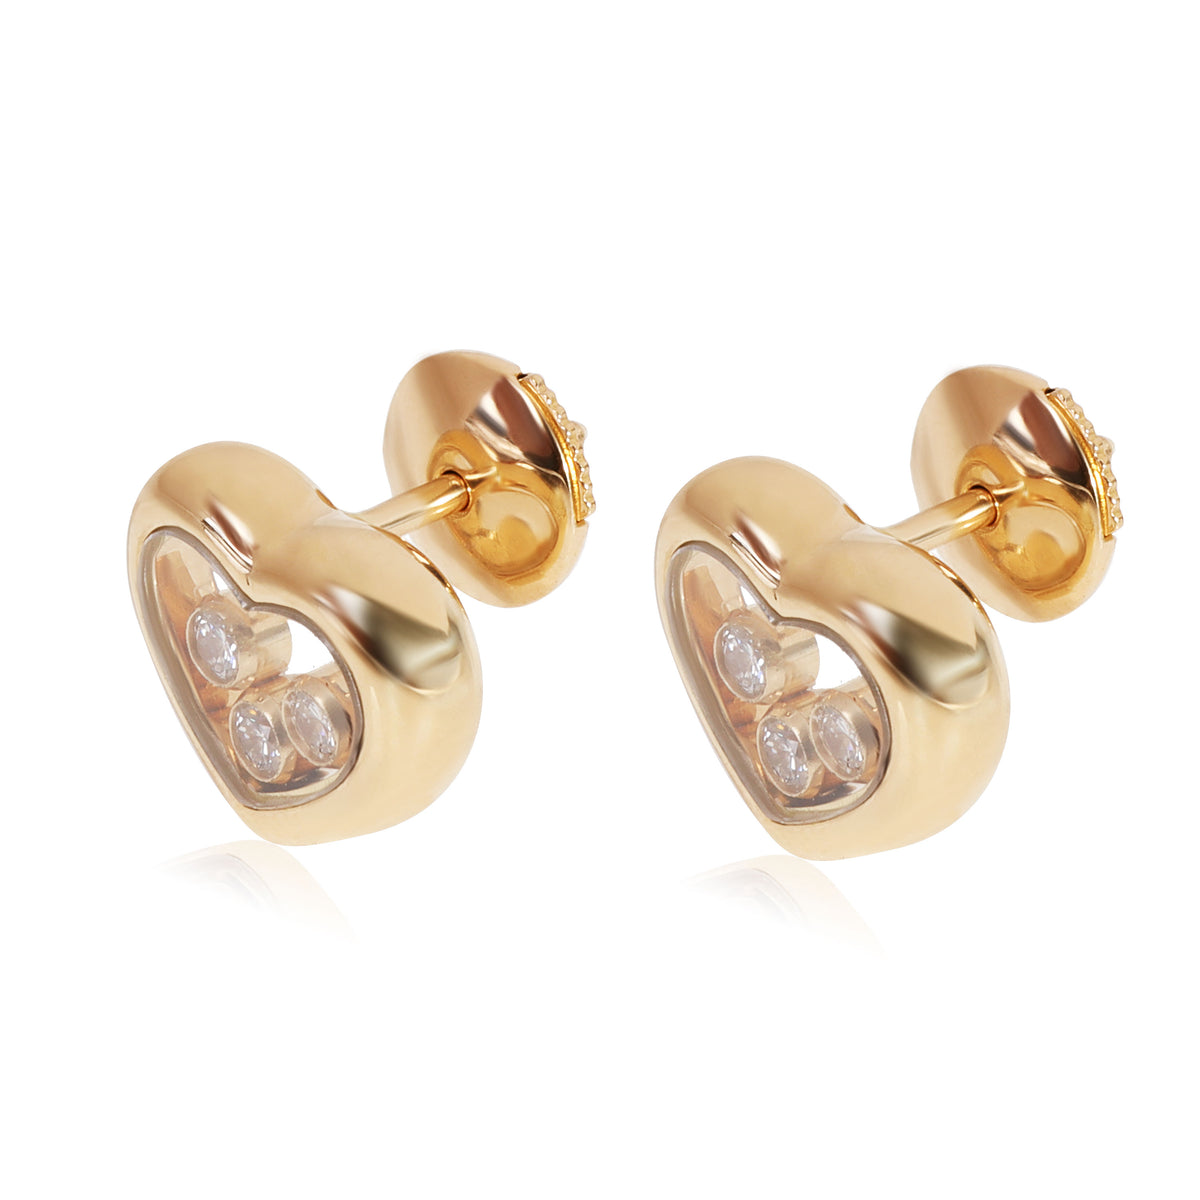 Chopard Happy Diamond Heart Earrings in 18k Yellow Gold 0.3 CTW